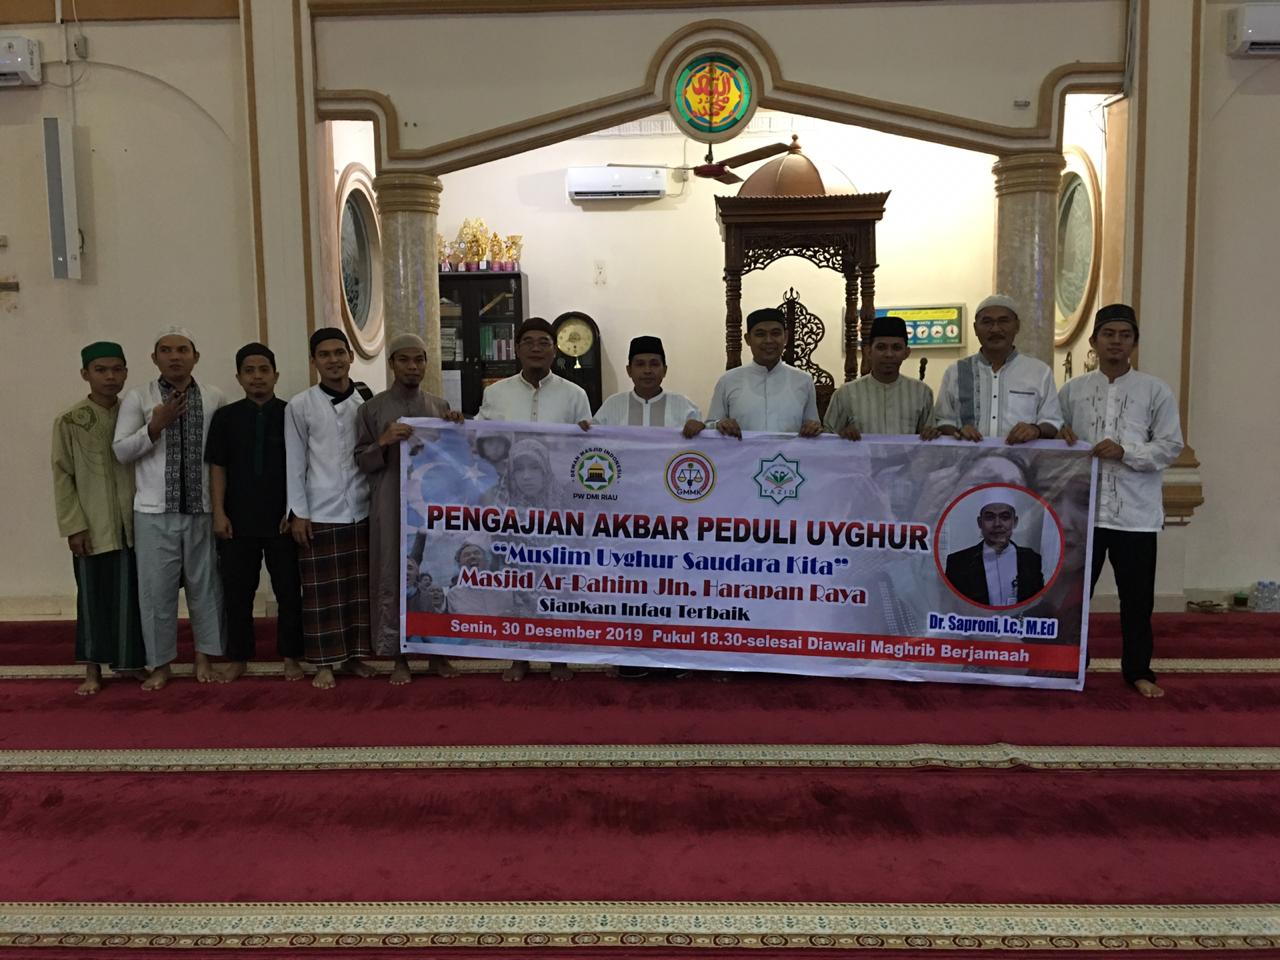 GMMK Riau dan PW DMI Riau Adakan Pengajian di Masjid-Masjid dukung Muslim Uighur